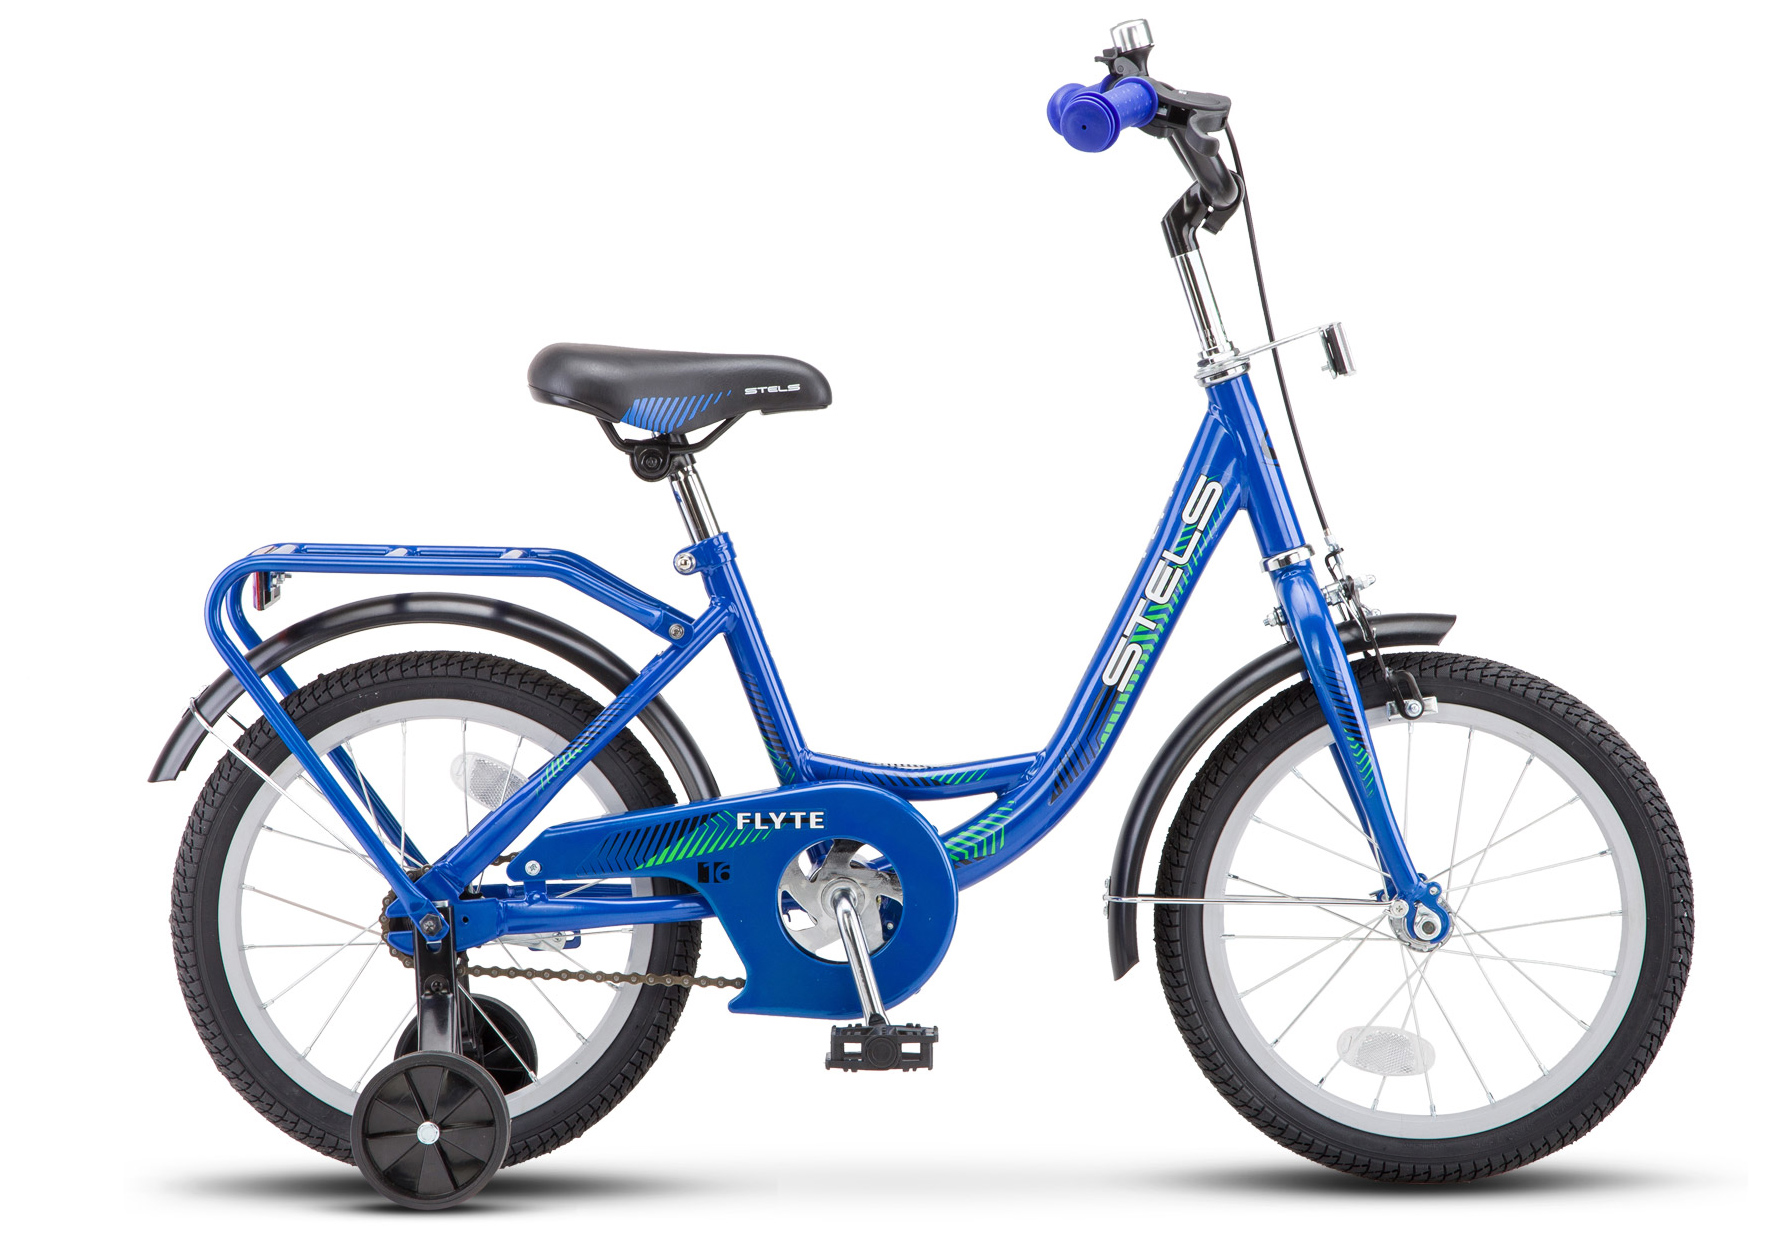  Велосипед трехколесный детский велосипед Stels Flyte 16 2019